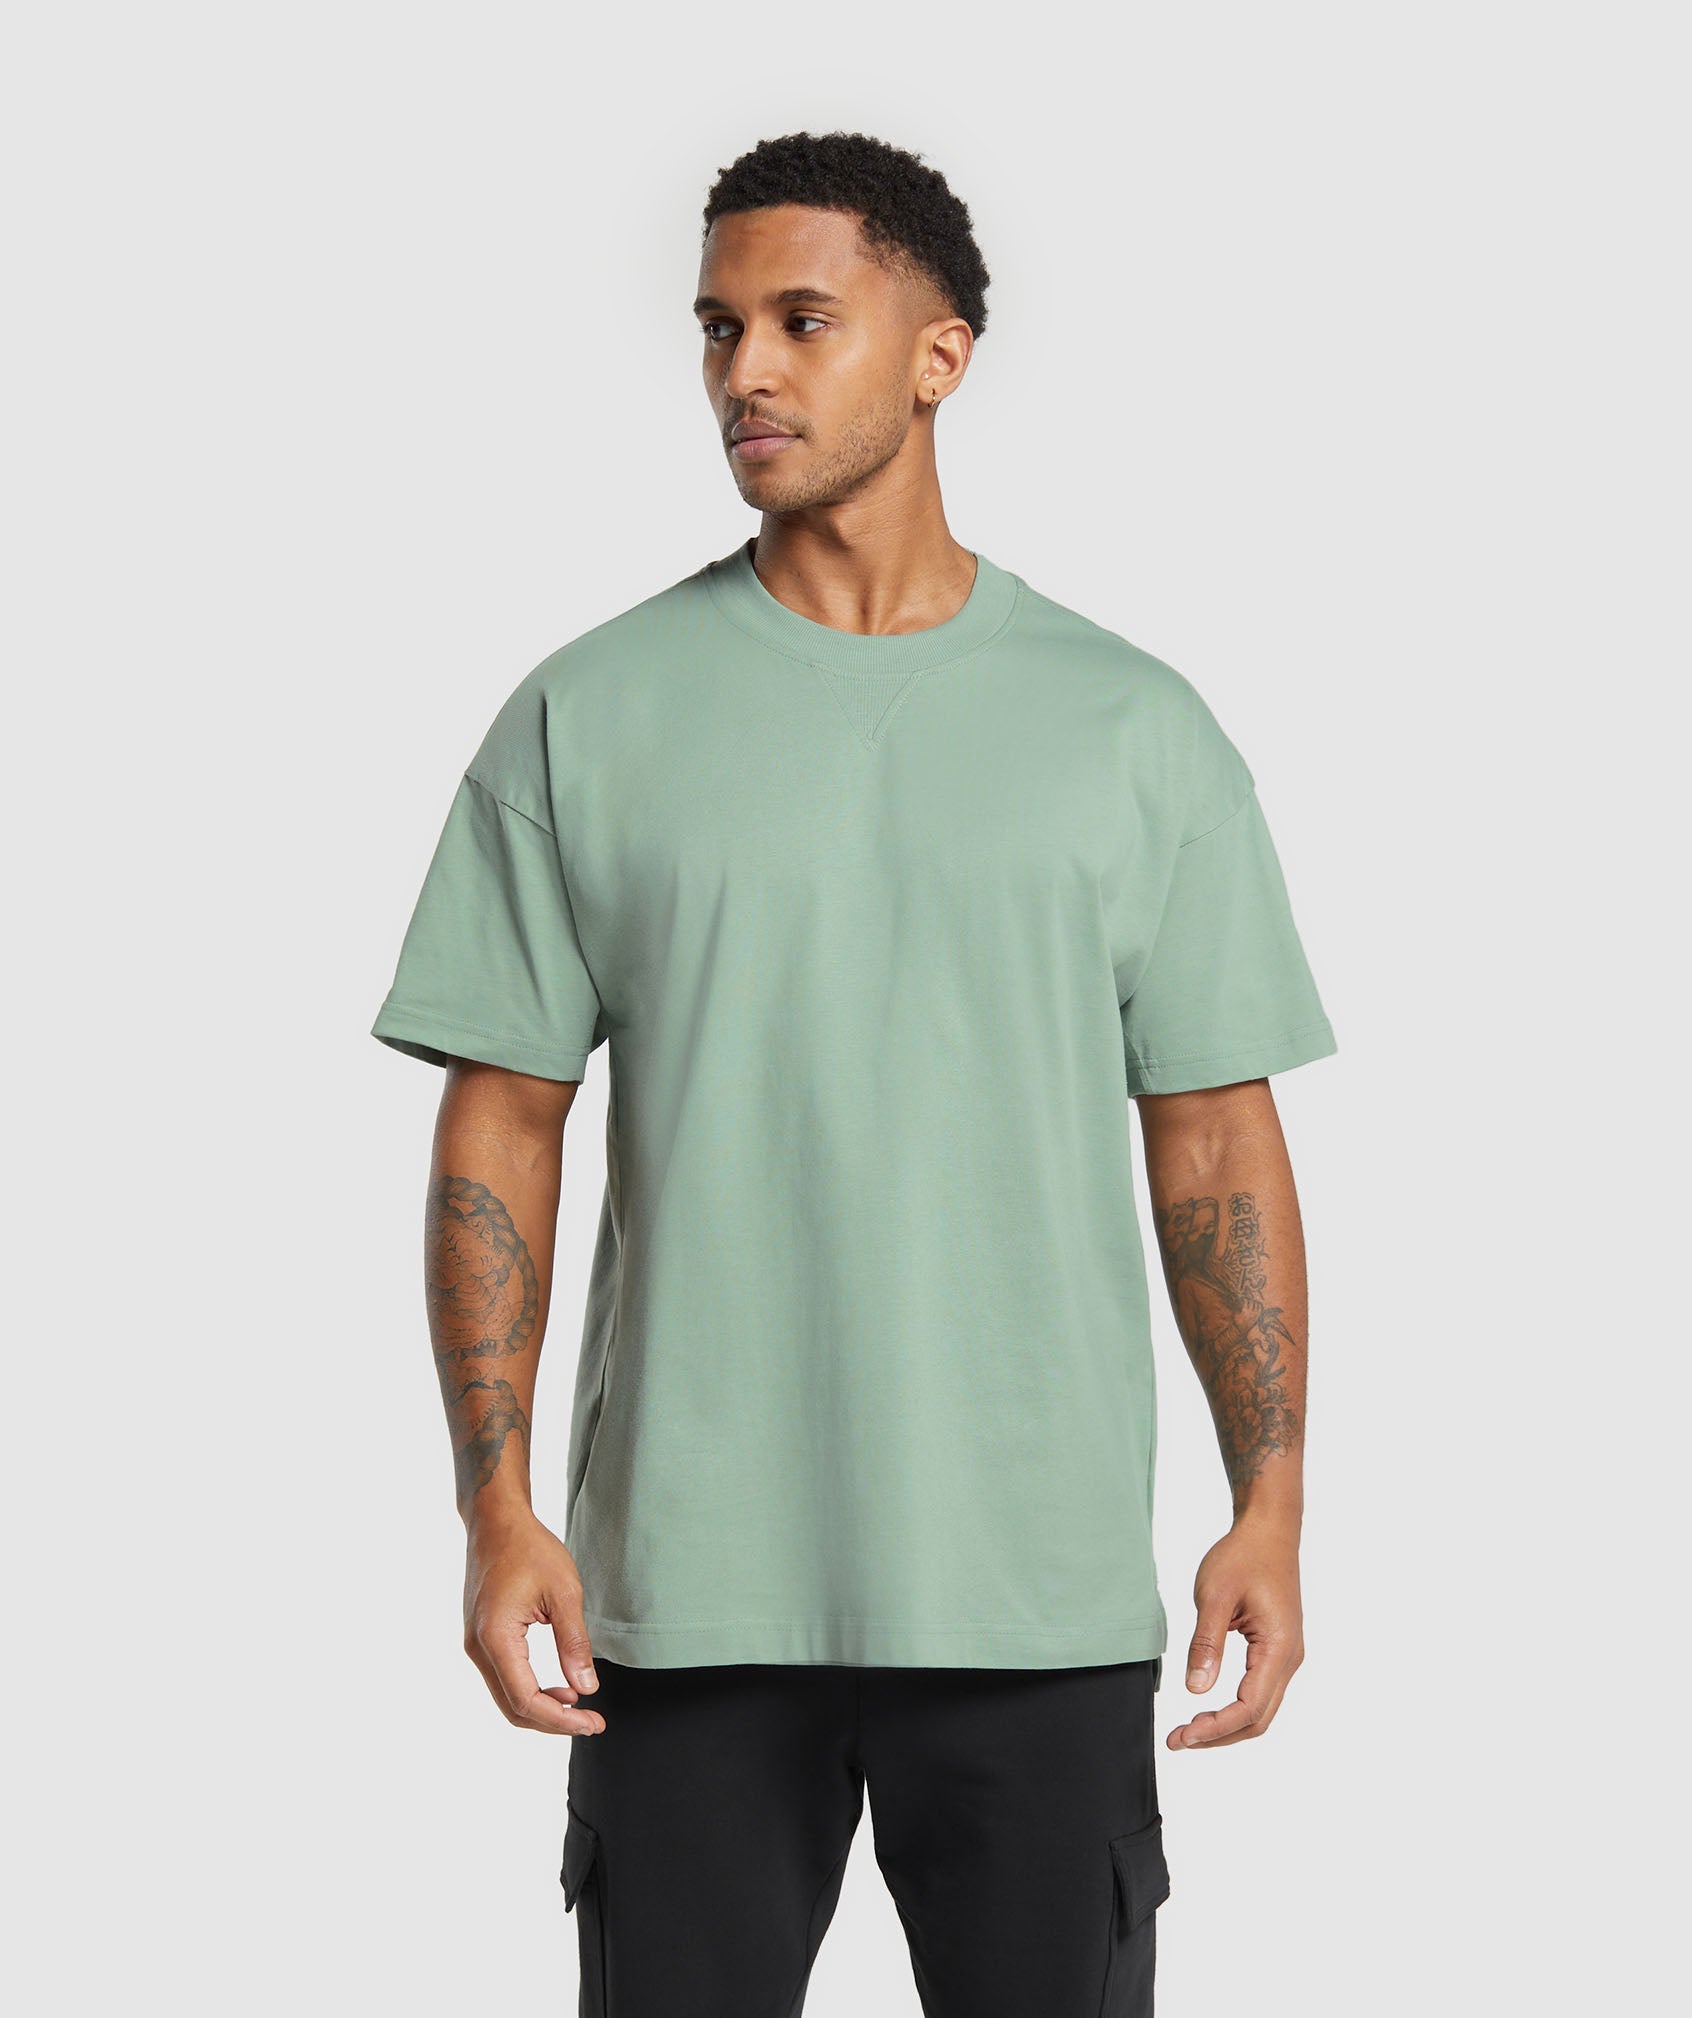 Rest Day Essentials T-Shirt in Dollar Green